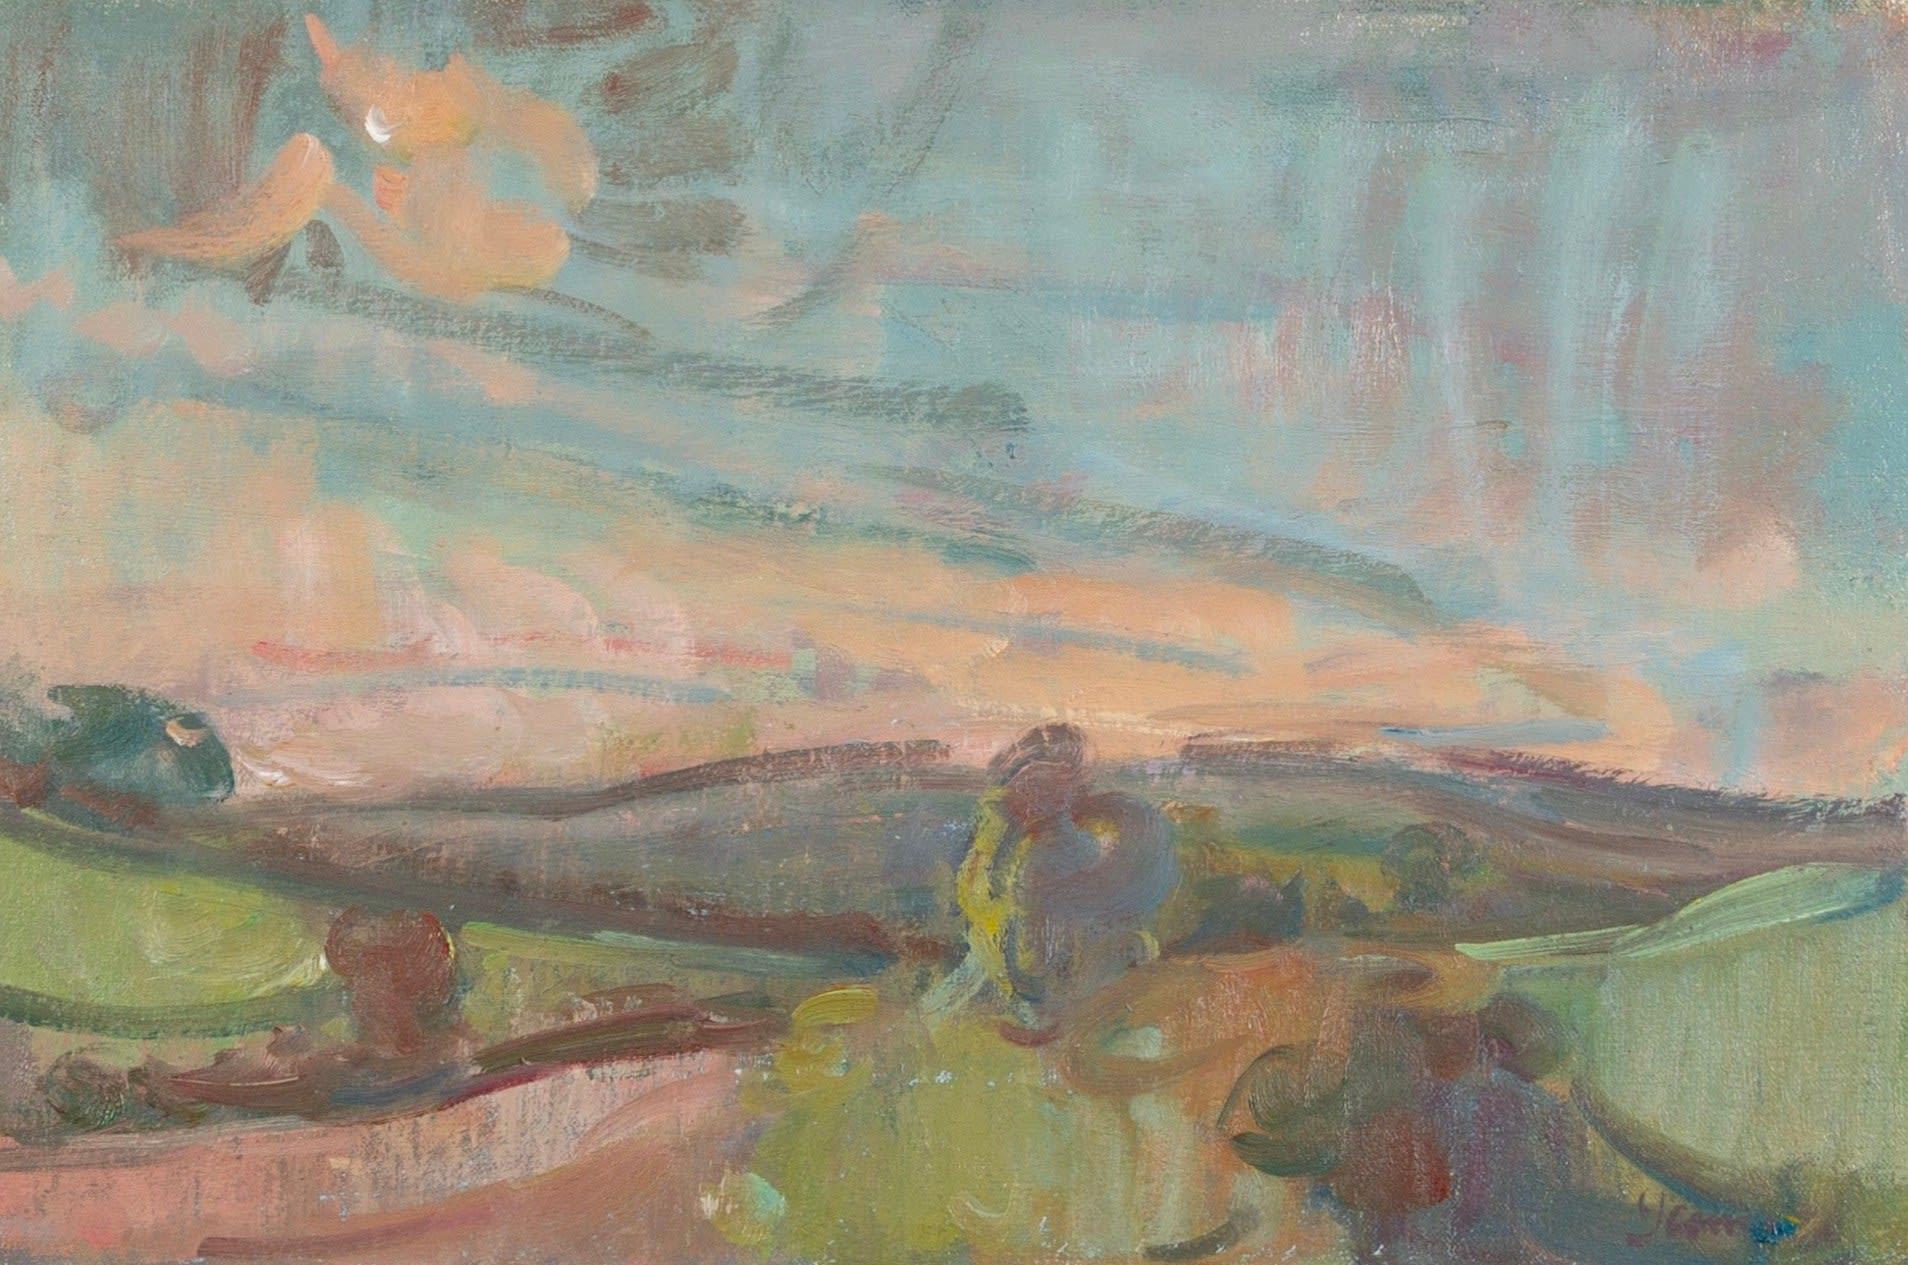 Deverills, soirée, peinture à l'huile sur toile de Martin Yeoman, 2022